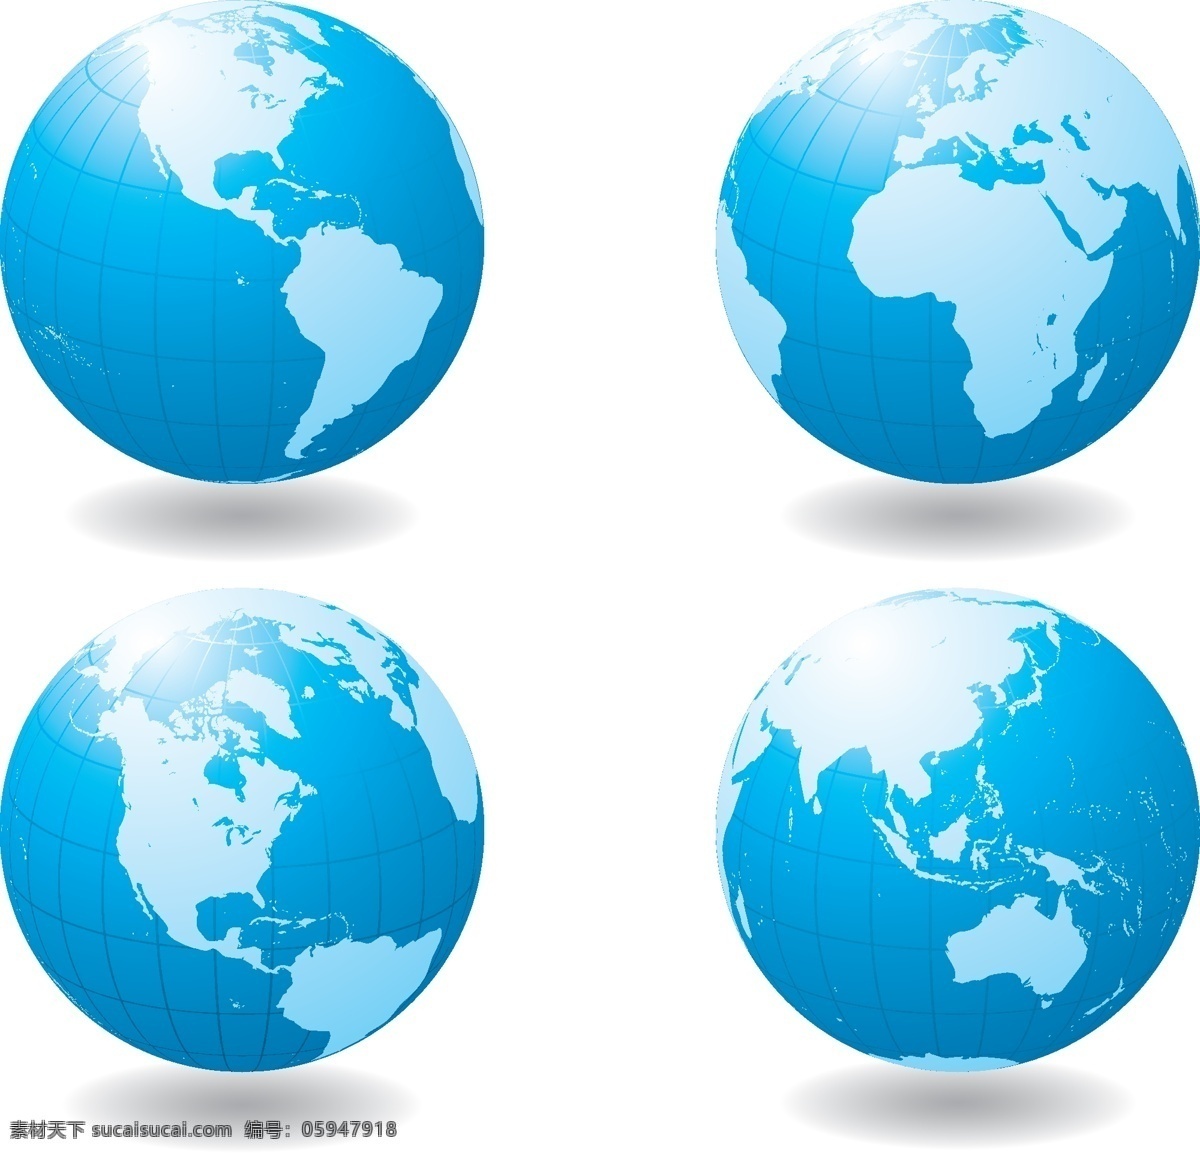 矢量地球 蓝色地球 地球素材 地球 绿色地球 环保地球 地球城市 爱护自然 保护地球 托住地球 毁灭 世界末日 天气 气流 矢量素材 标志图案 标识标志图标 矢量